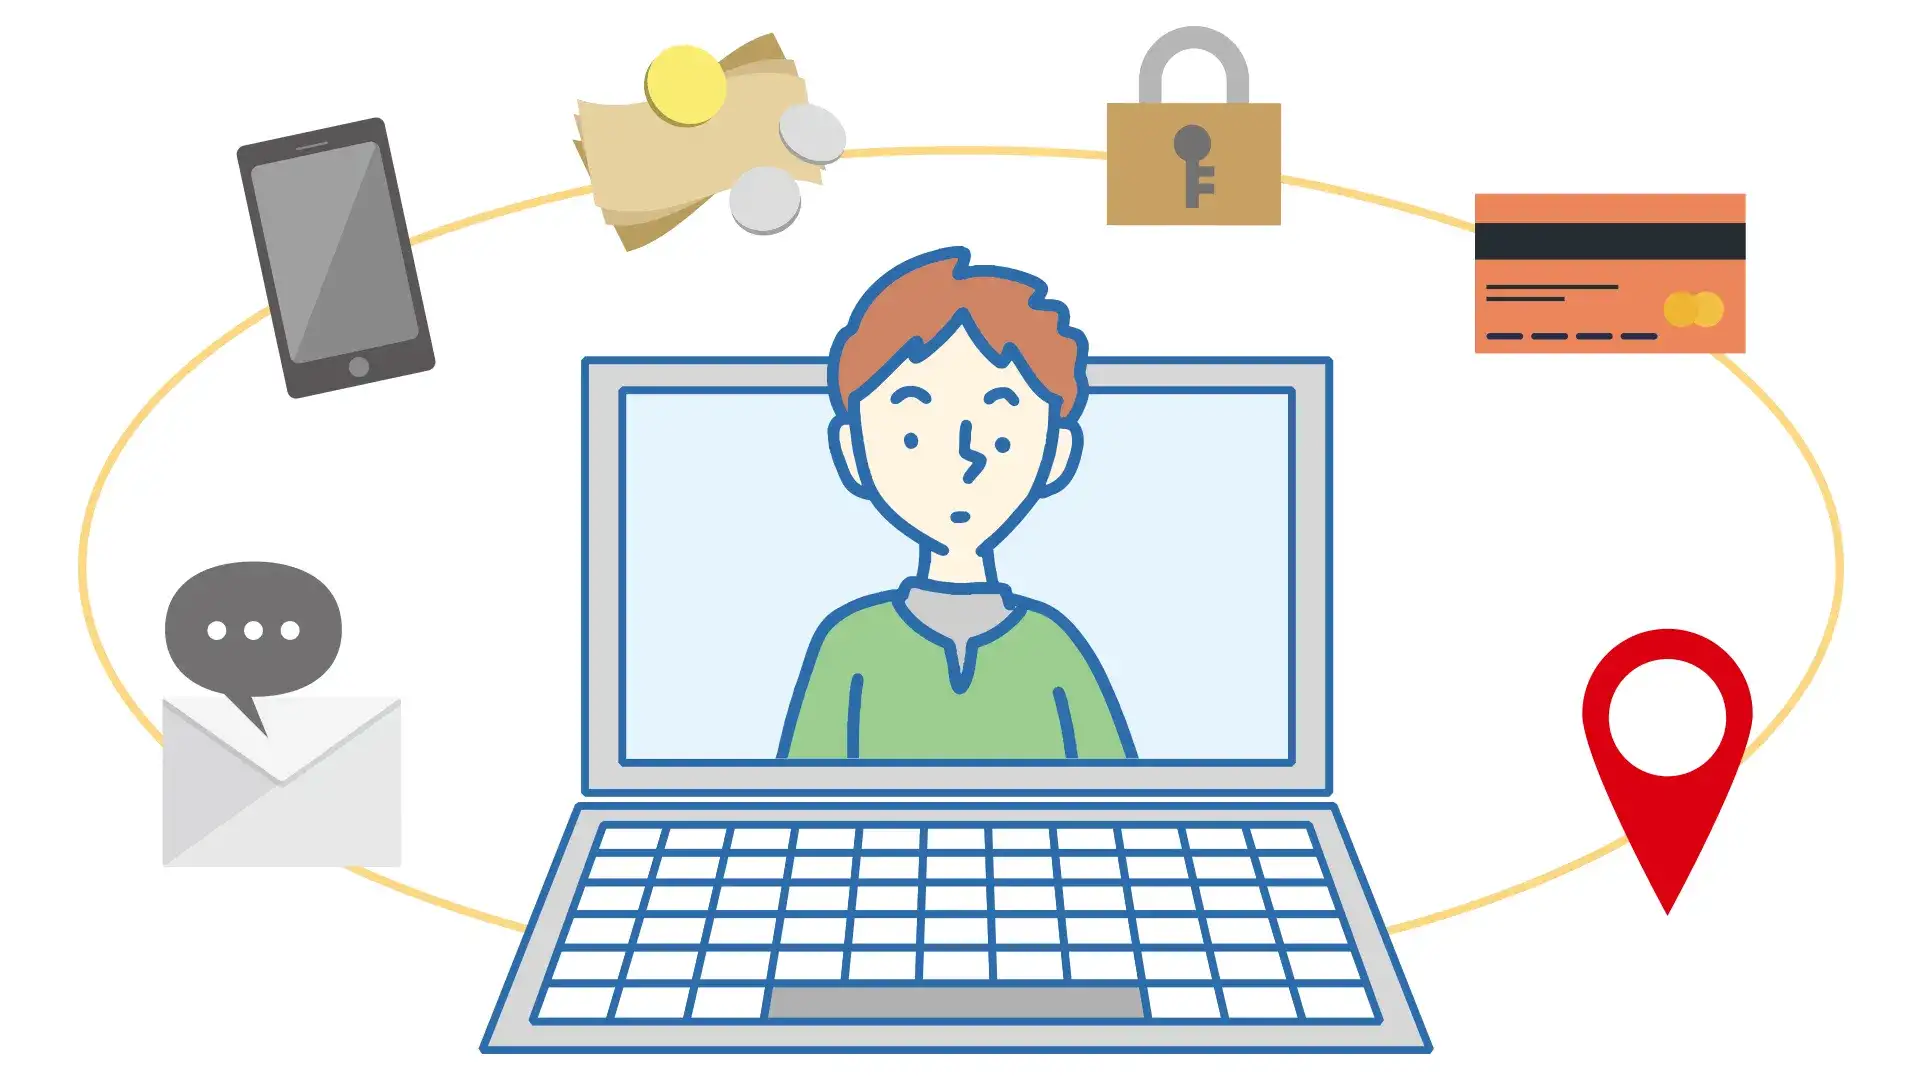 サイバーセキュリティのイメージ。パソコンの周りにメール、携帯、お金、鍵、クレジットカード、位置情報マークが描かれている。